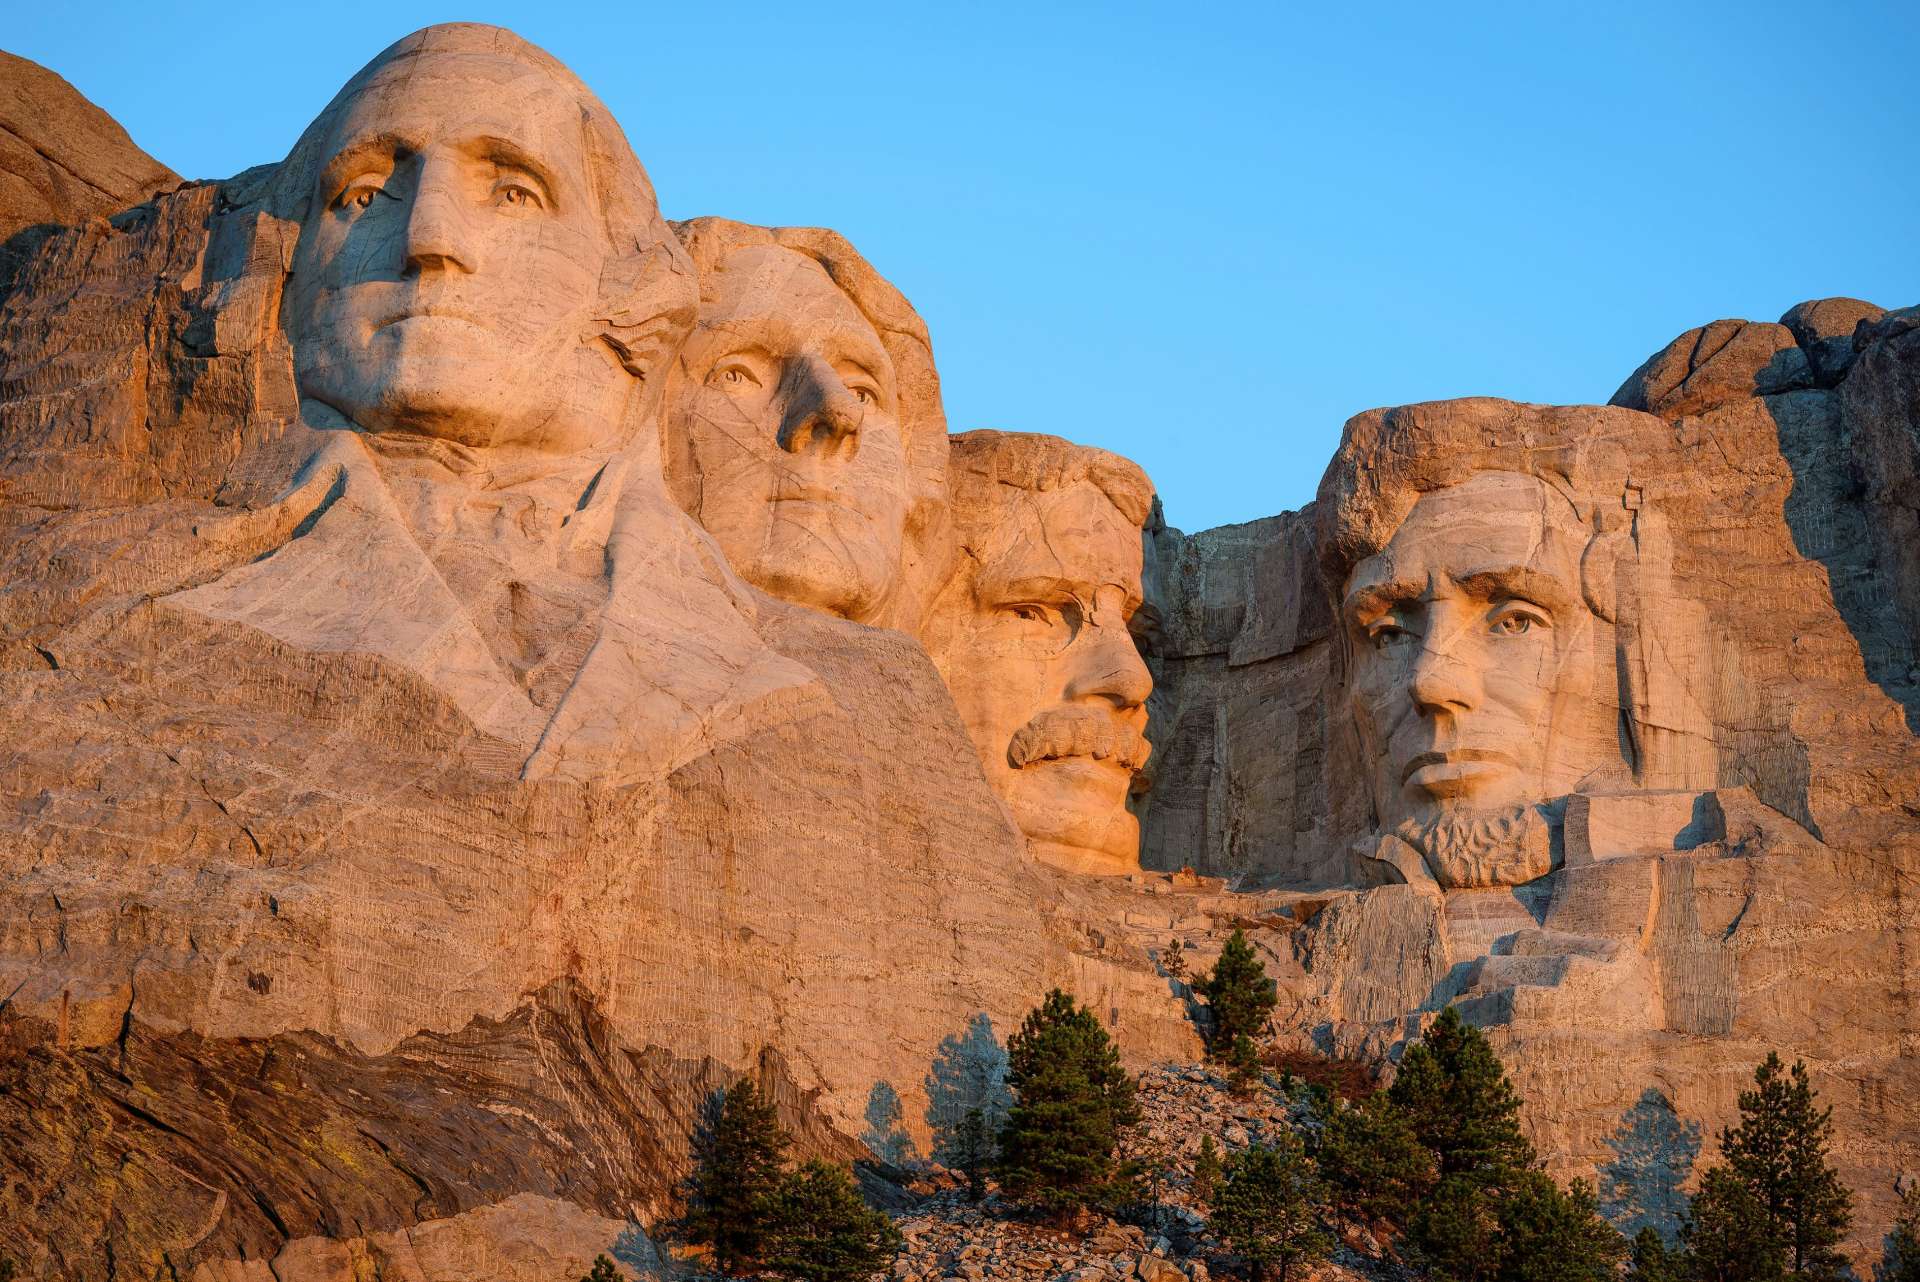 左から順に、初代大統領ジョージ・ワシントン、第3代大統領トーマス・ジェファーソン、第26第大統領セオドア・ルーズベルト、第16代大統領エイブラハム・リンカーン